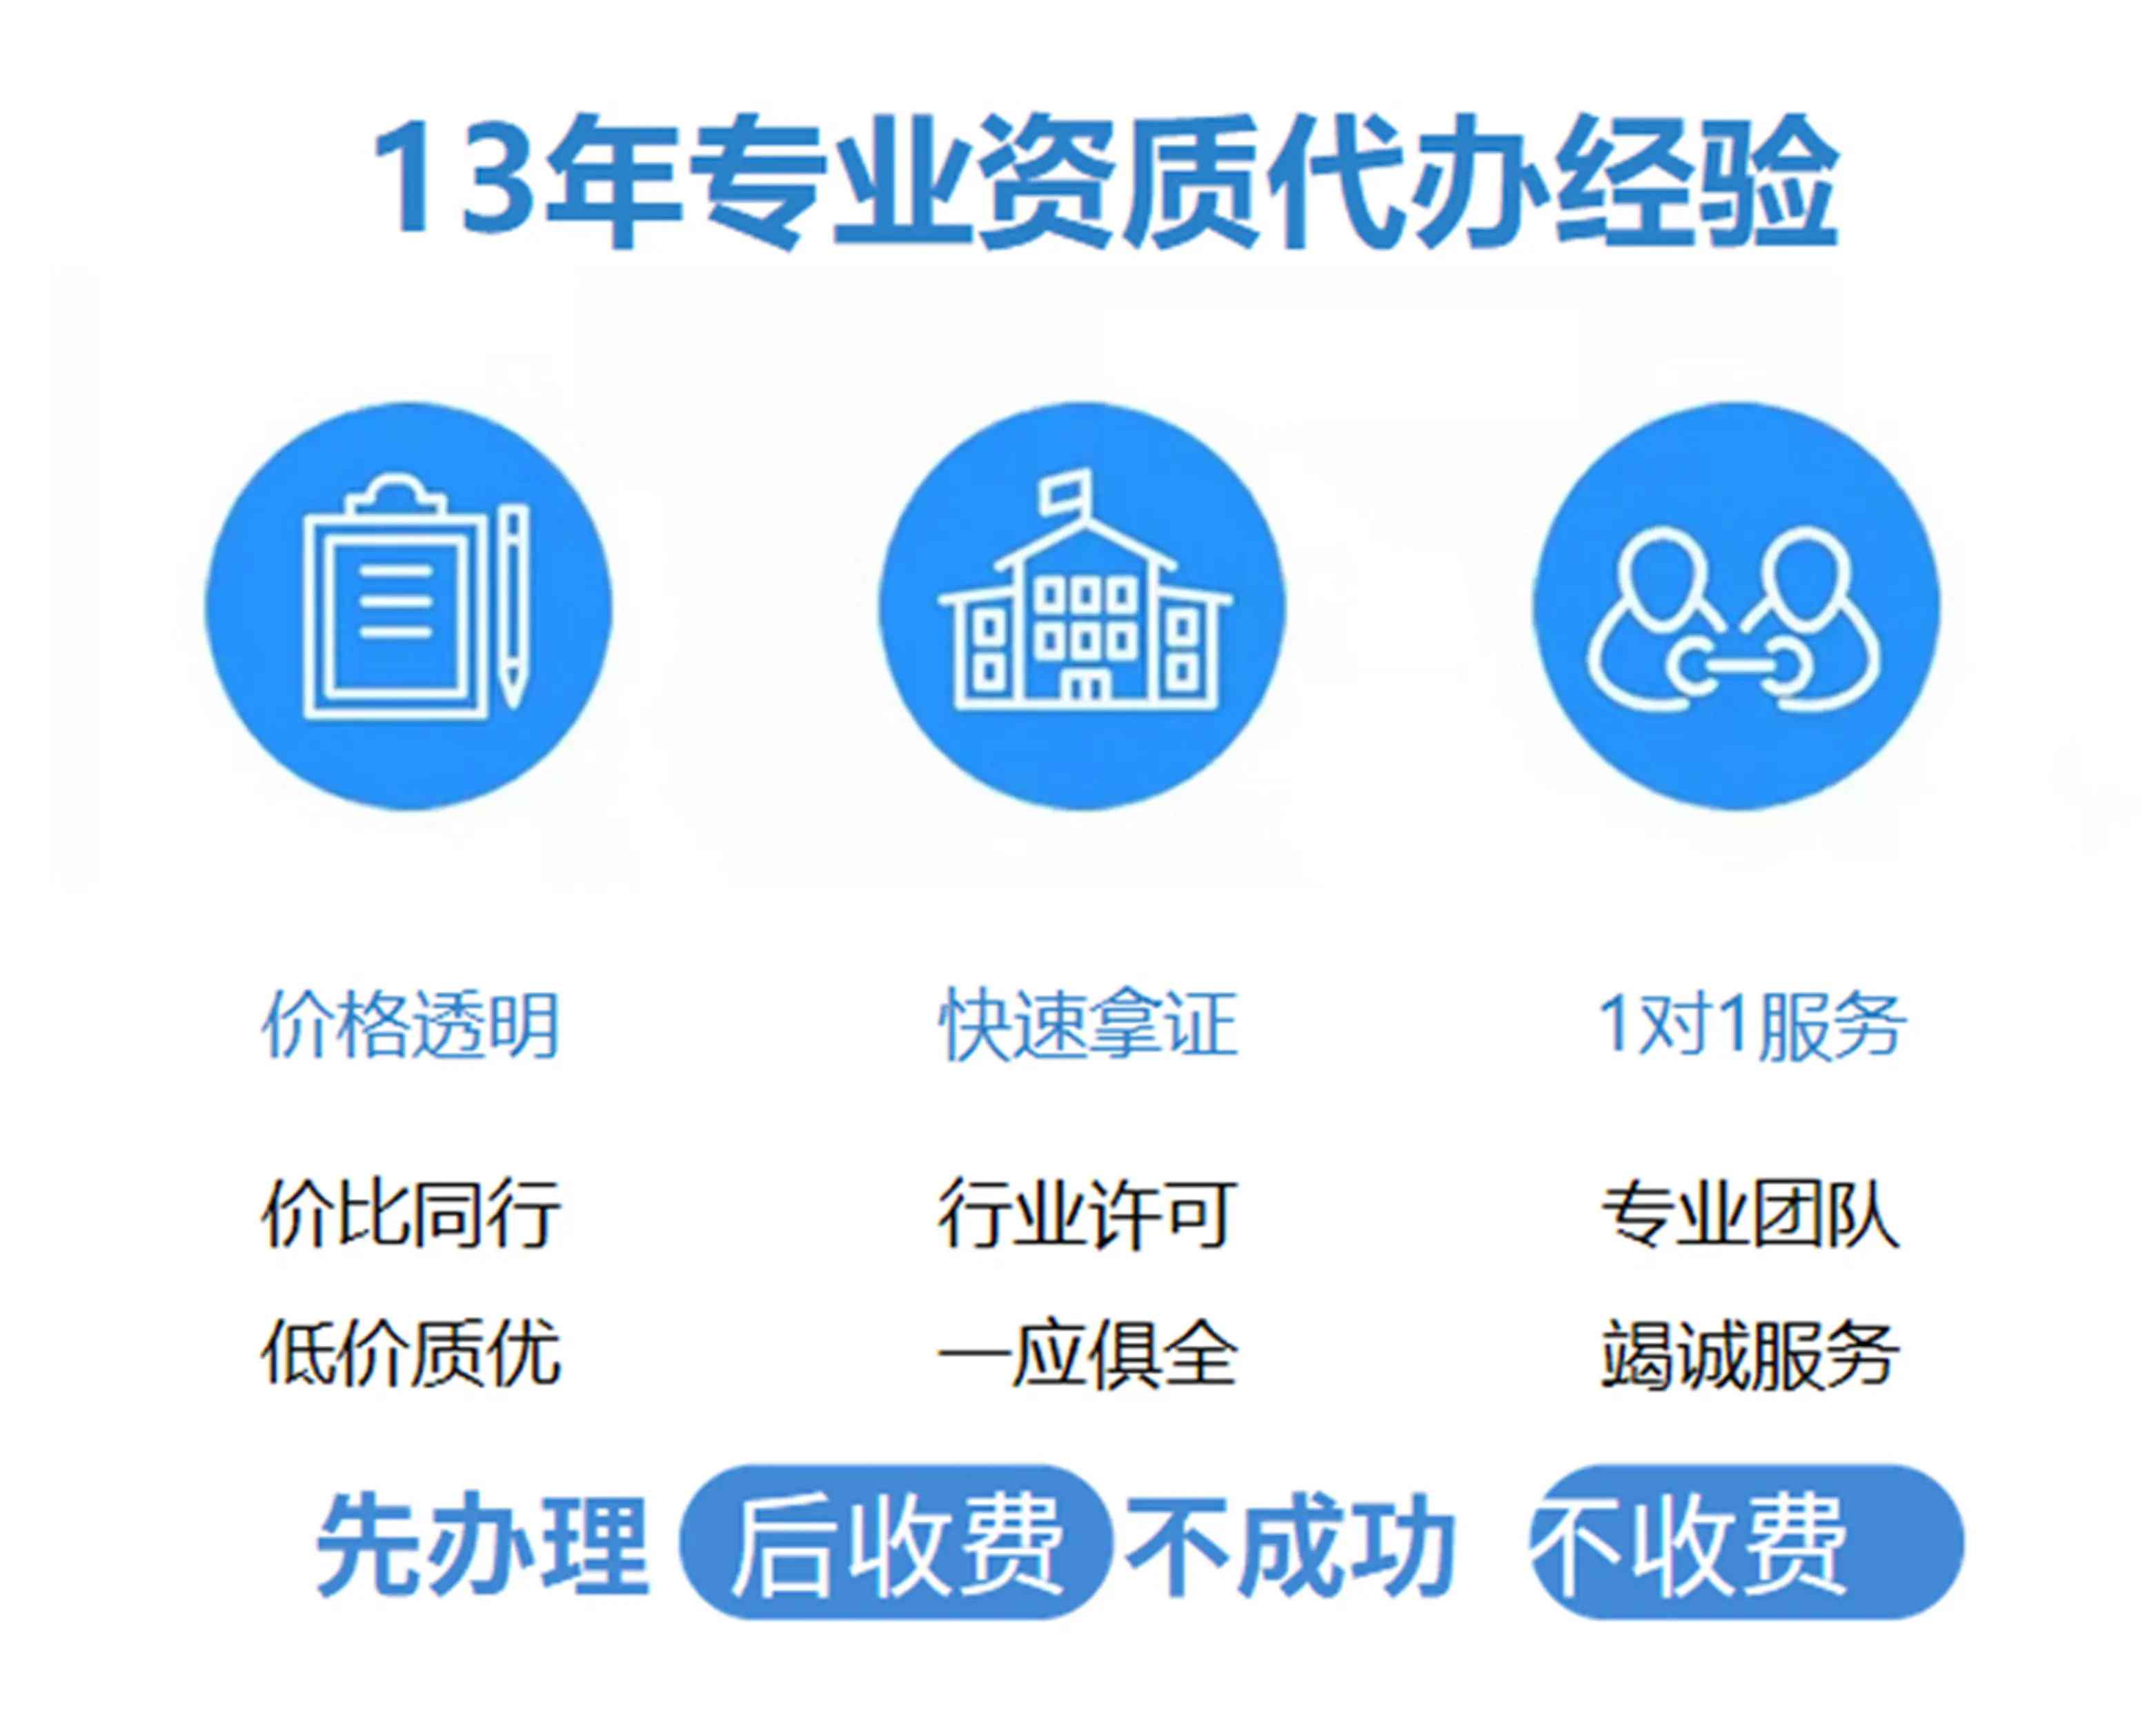 重庆垫江县承装修试lol外围电力设施许可证转让包干价是多少